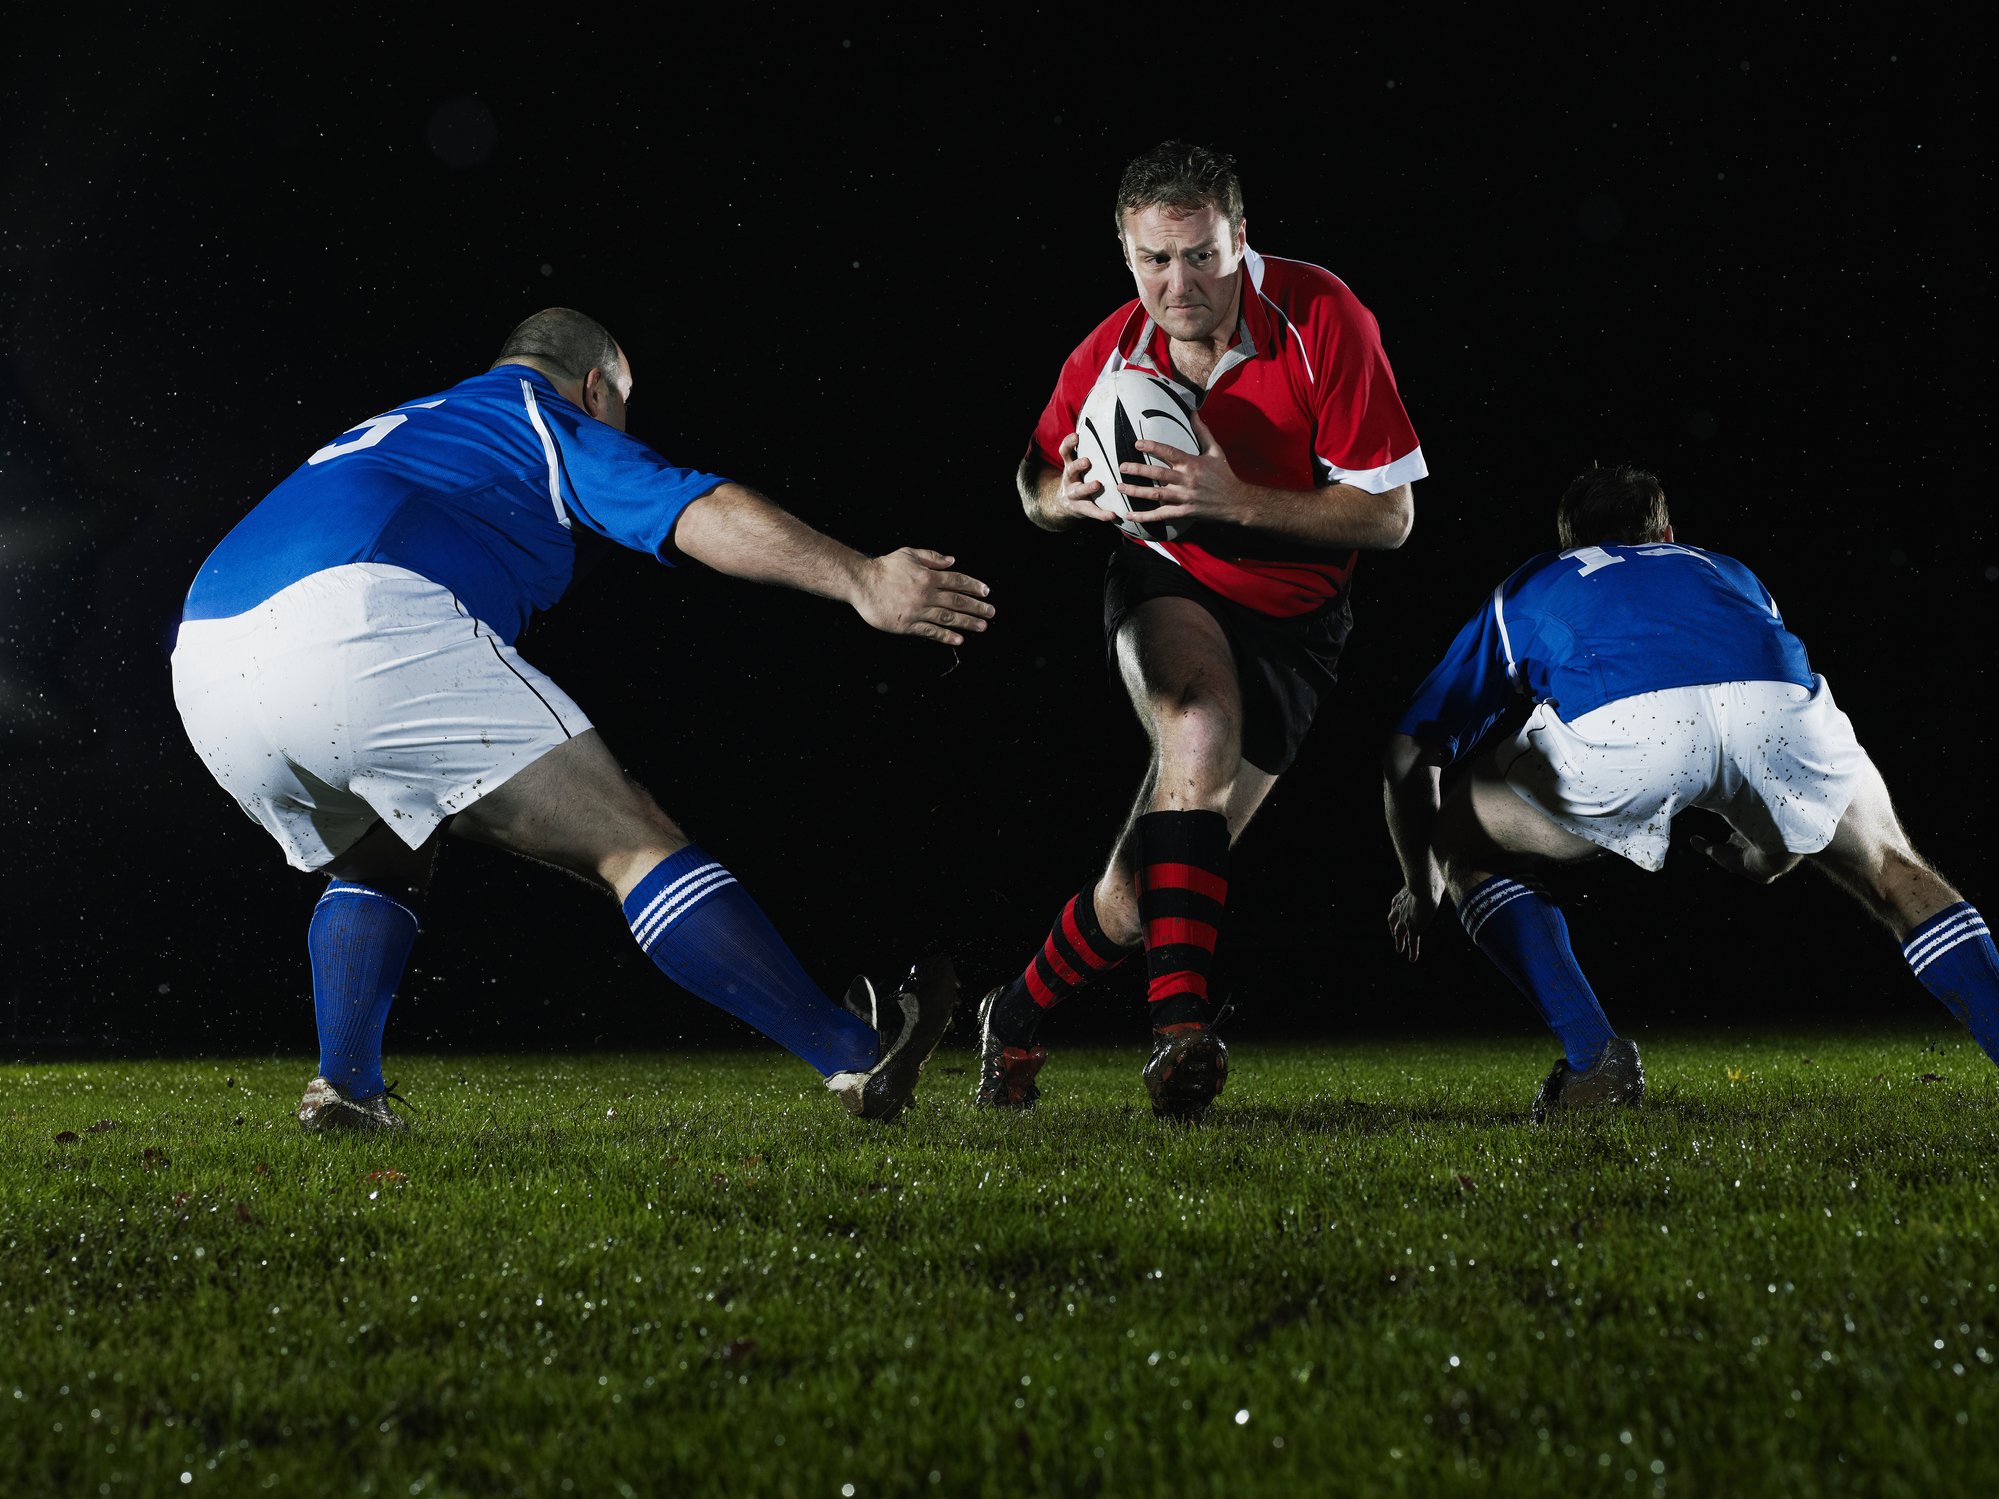 Mundial de Rugby: Procuraremos fazer o nosso jogo cuja